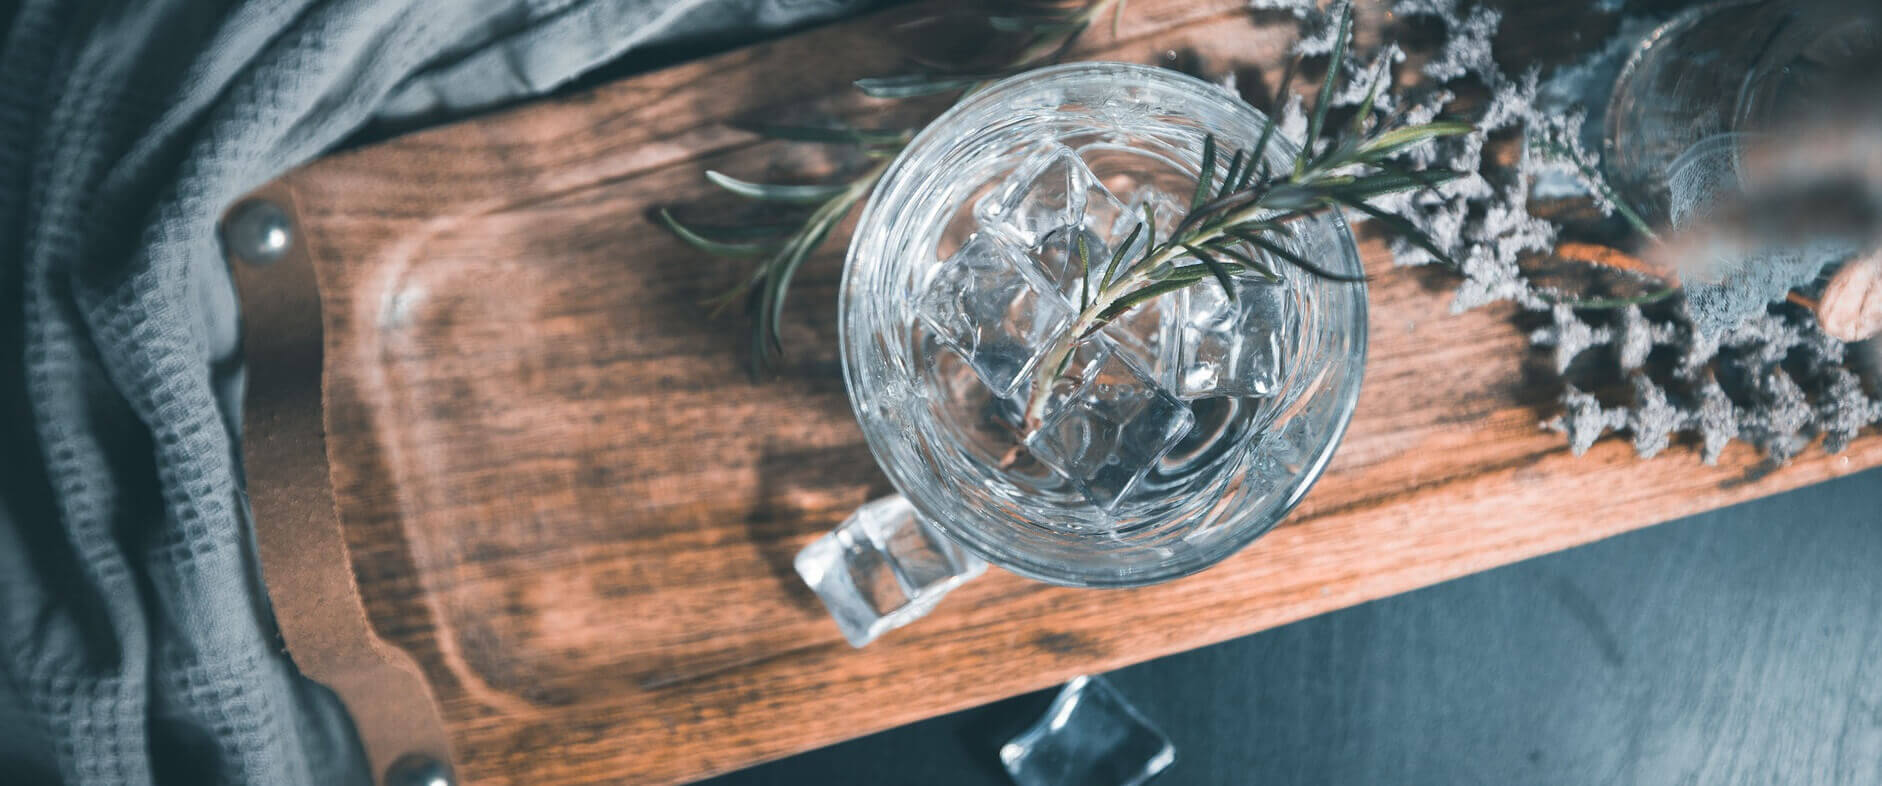 Glas mit Gin Tonic und Eiswürfeln von oben